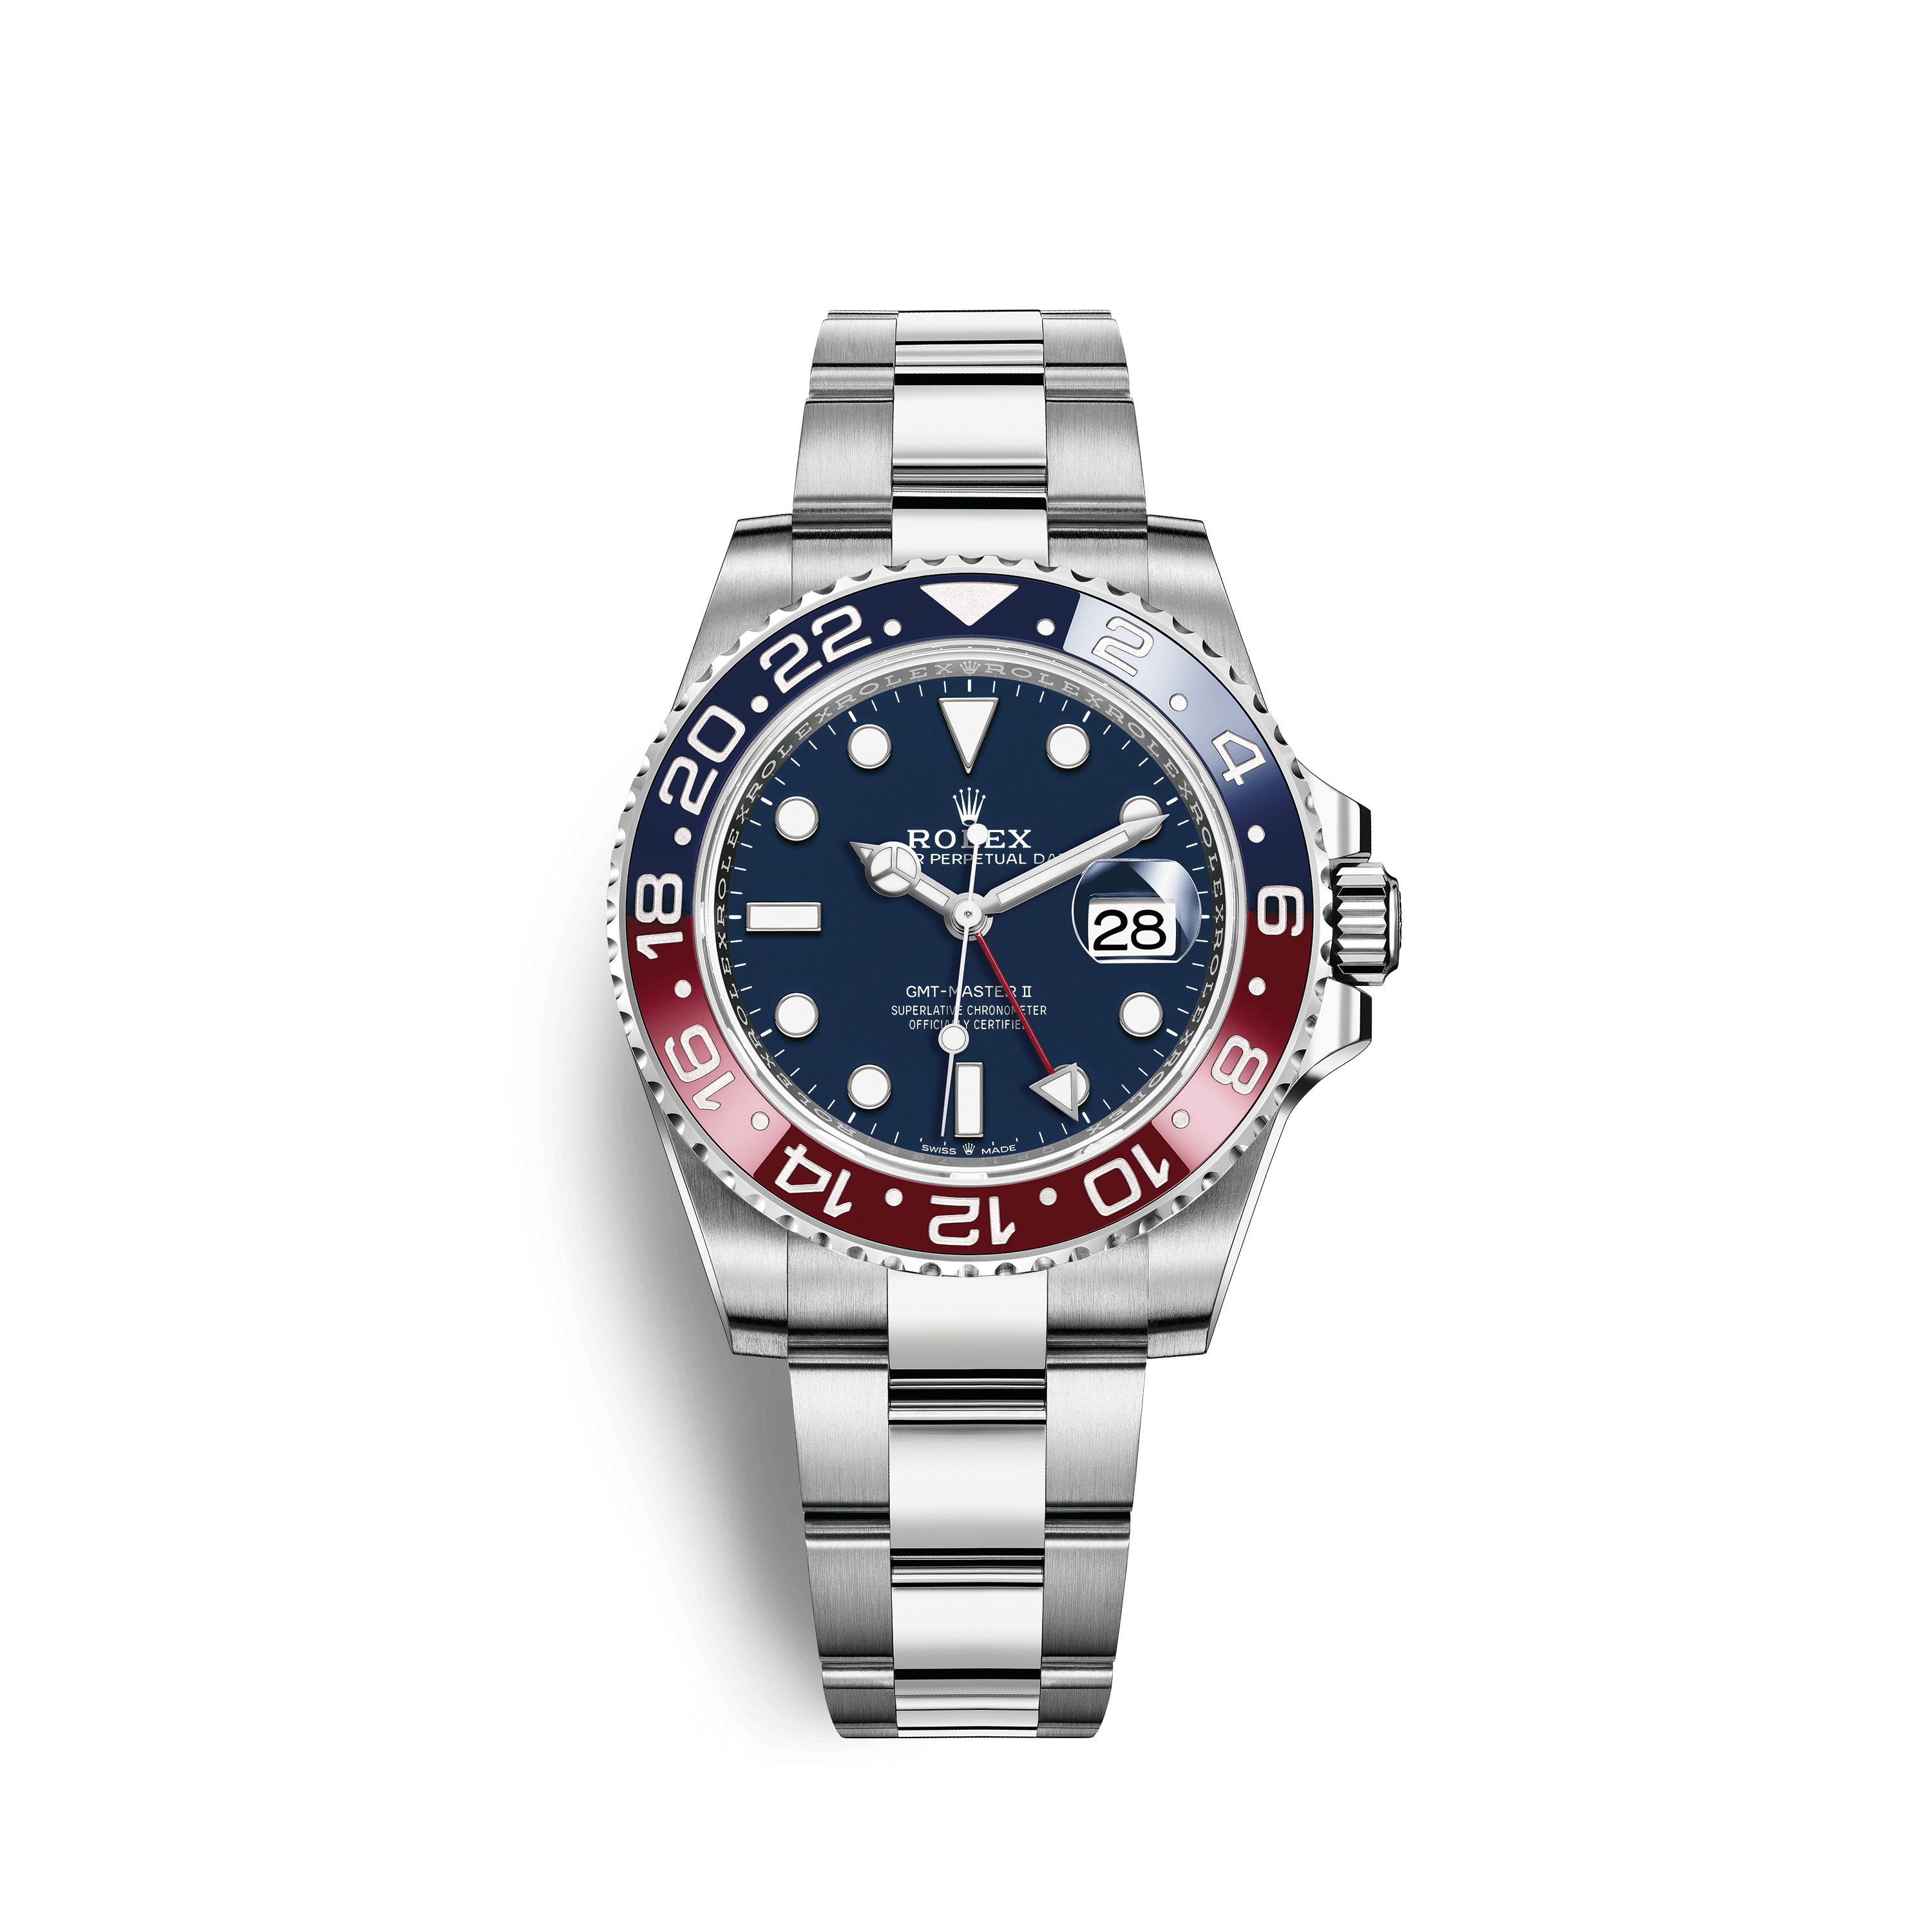 Rolex GMT-Master II | 126719BLRO | GMT-Master II | หน้าปัดสี | ขอบหน้าปัดแสดงเวลา 24 ชั่วโมงแบบหมุนได้ | หน้าปัดสีน้ำเงินเข้ม | ทองคำขาว 18 กะรัต | m126719blro-0003 | ชาย Watch | Rolex Official Retailer - Time Midas